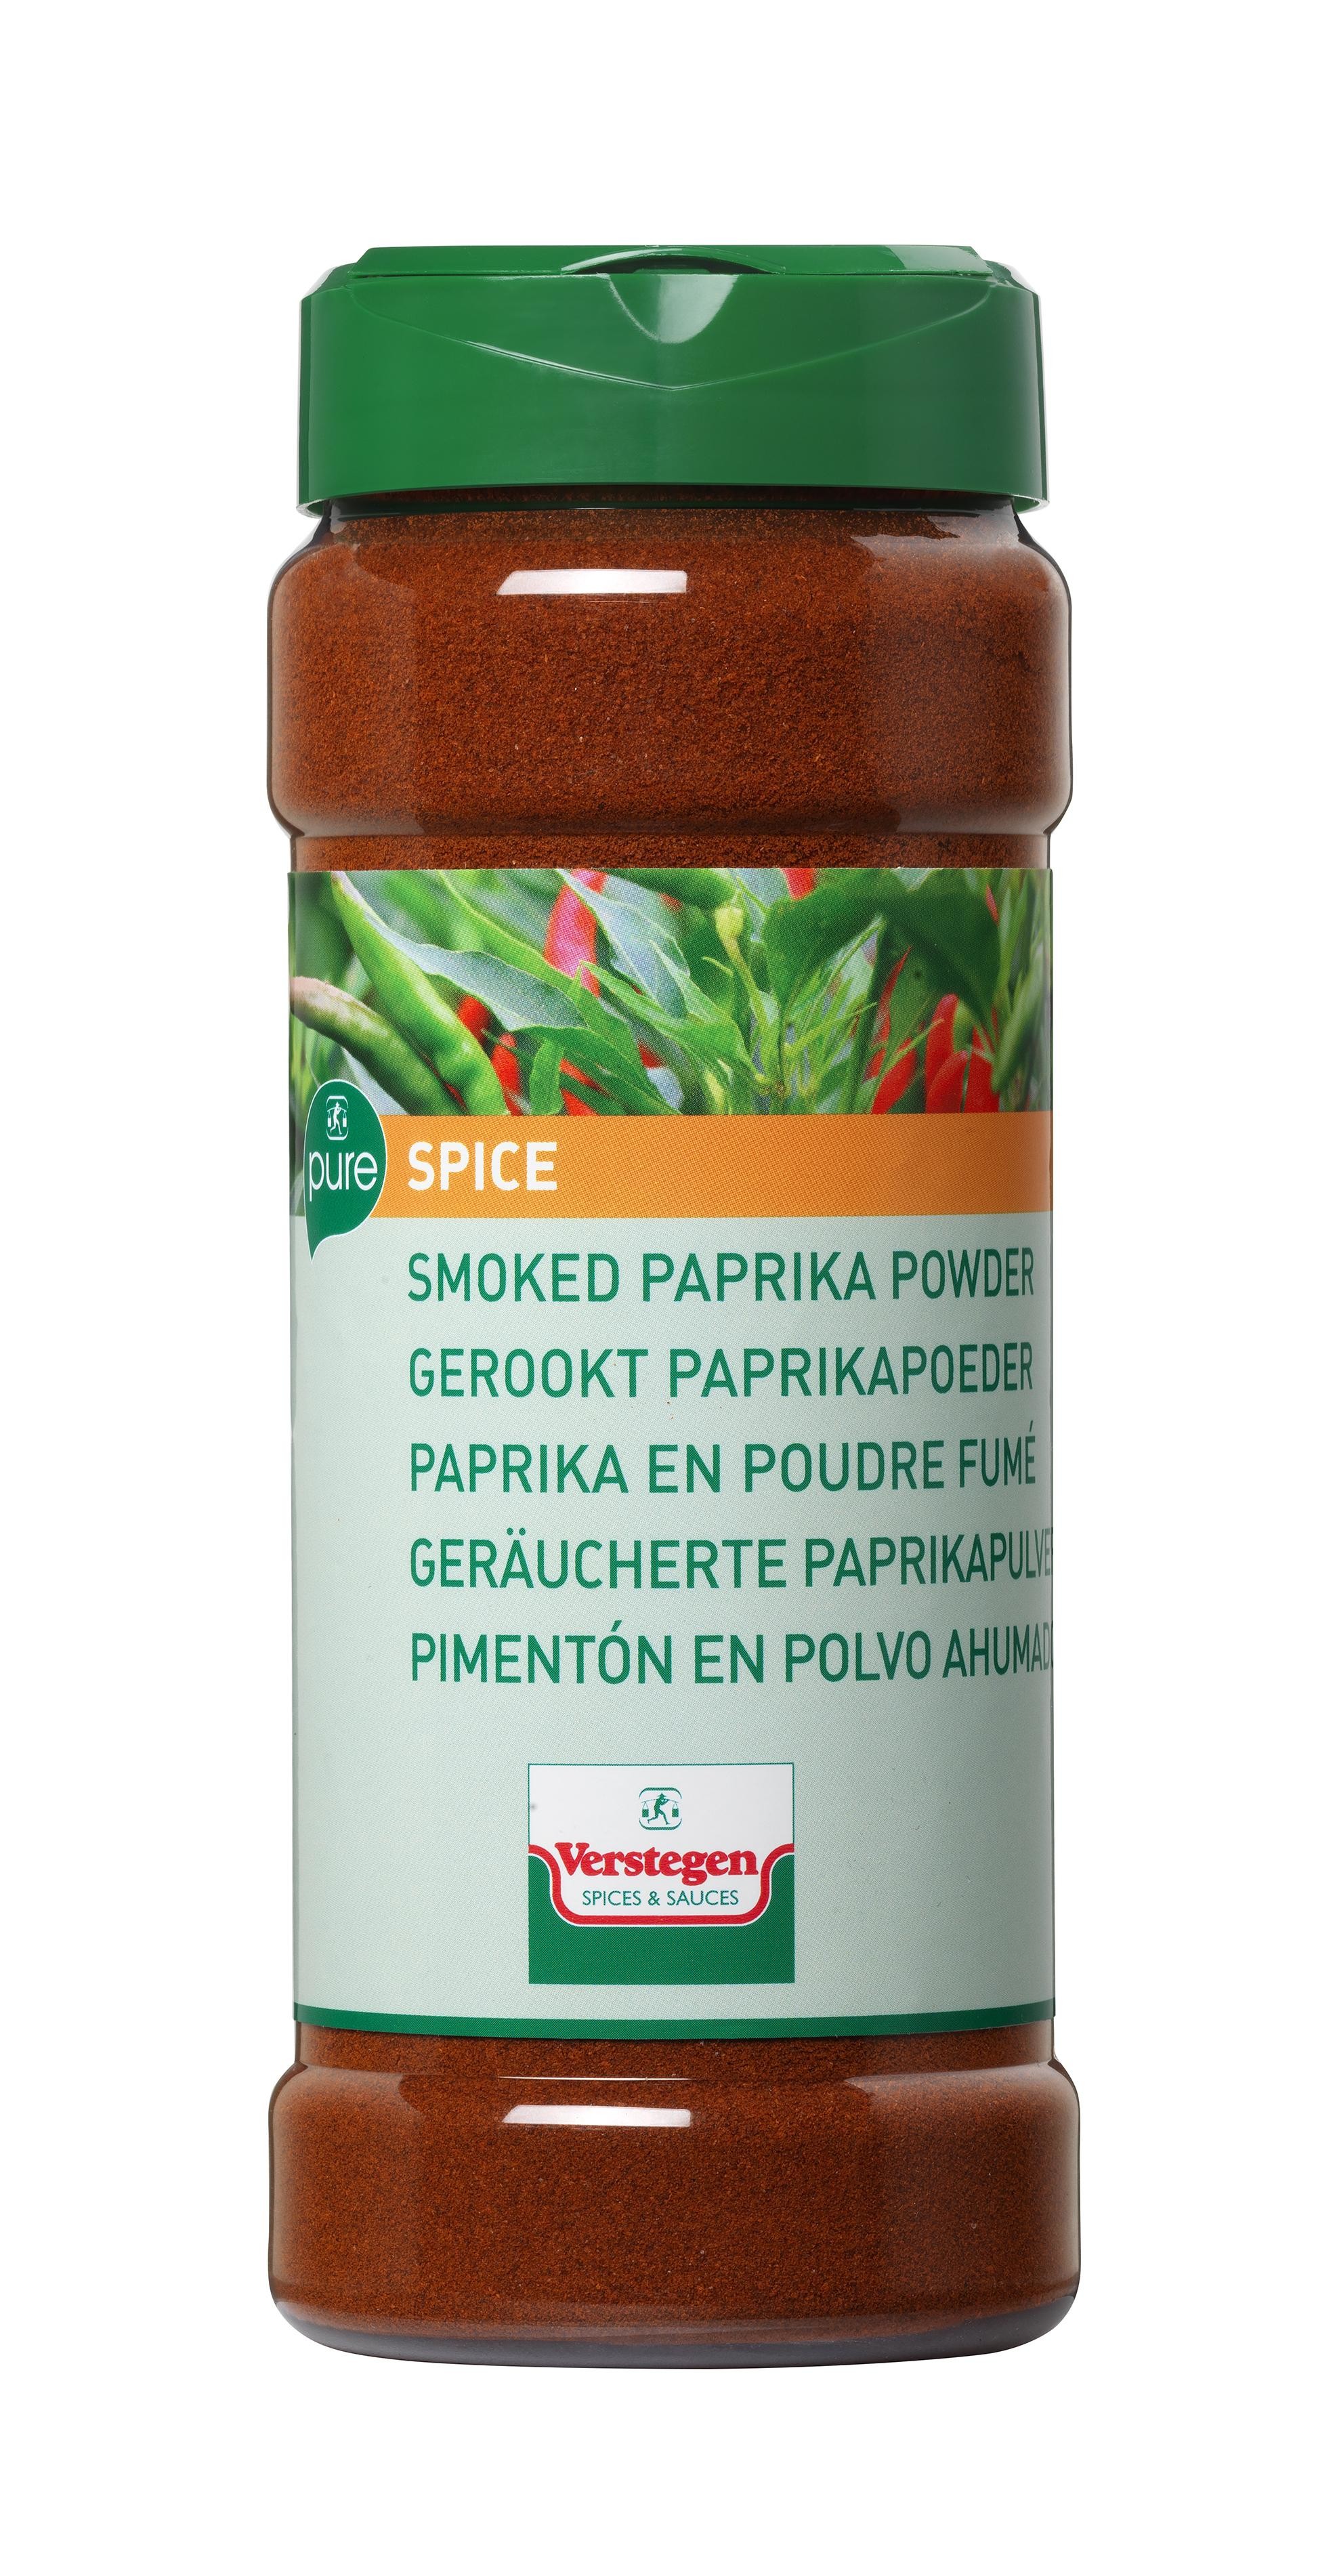 Verstegen Epices Paprika en poudre Fumé 240gr en pot PET